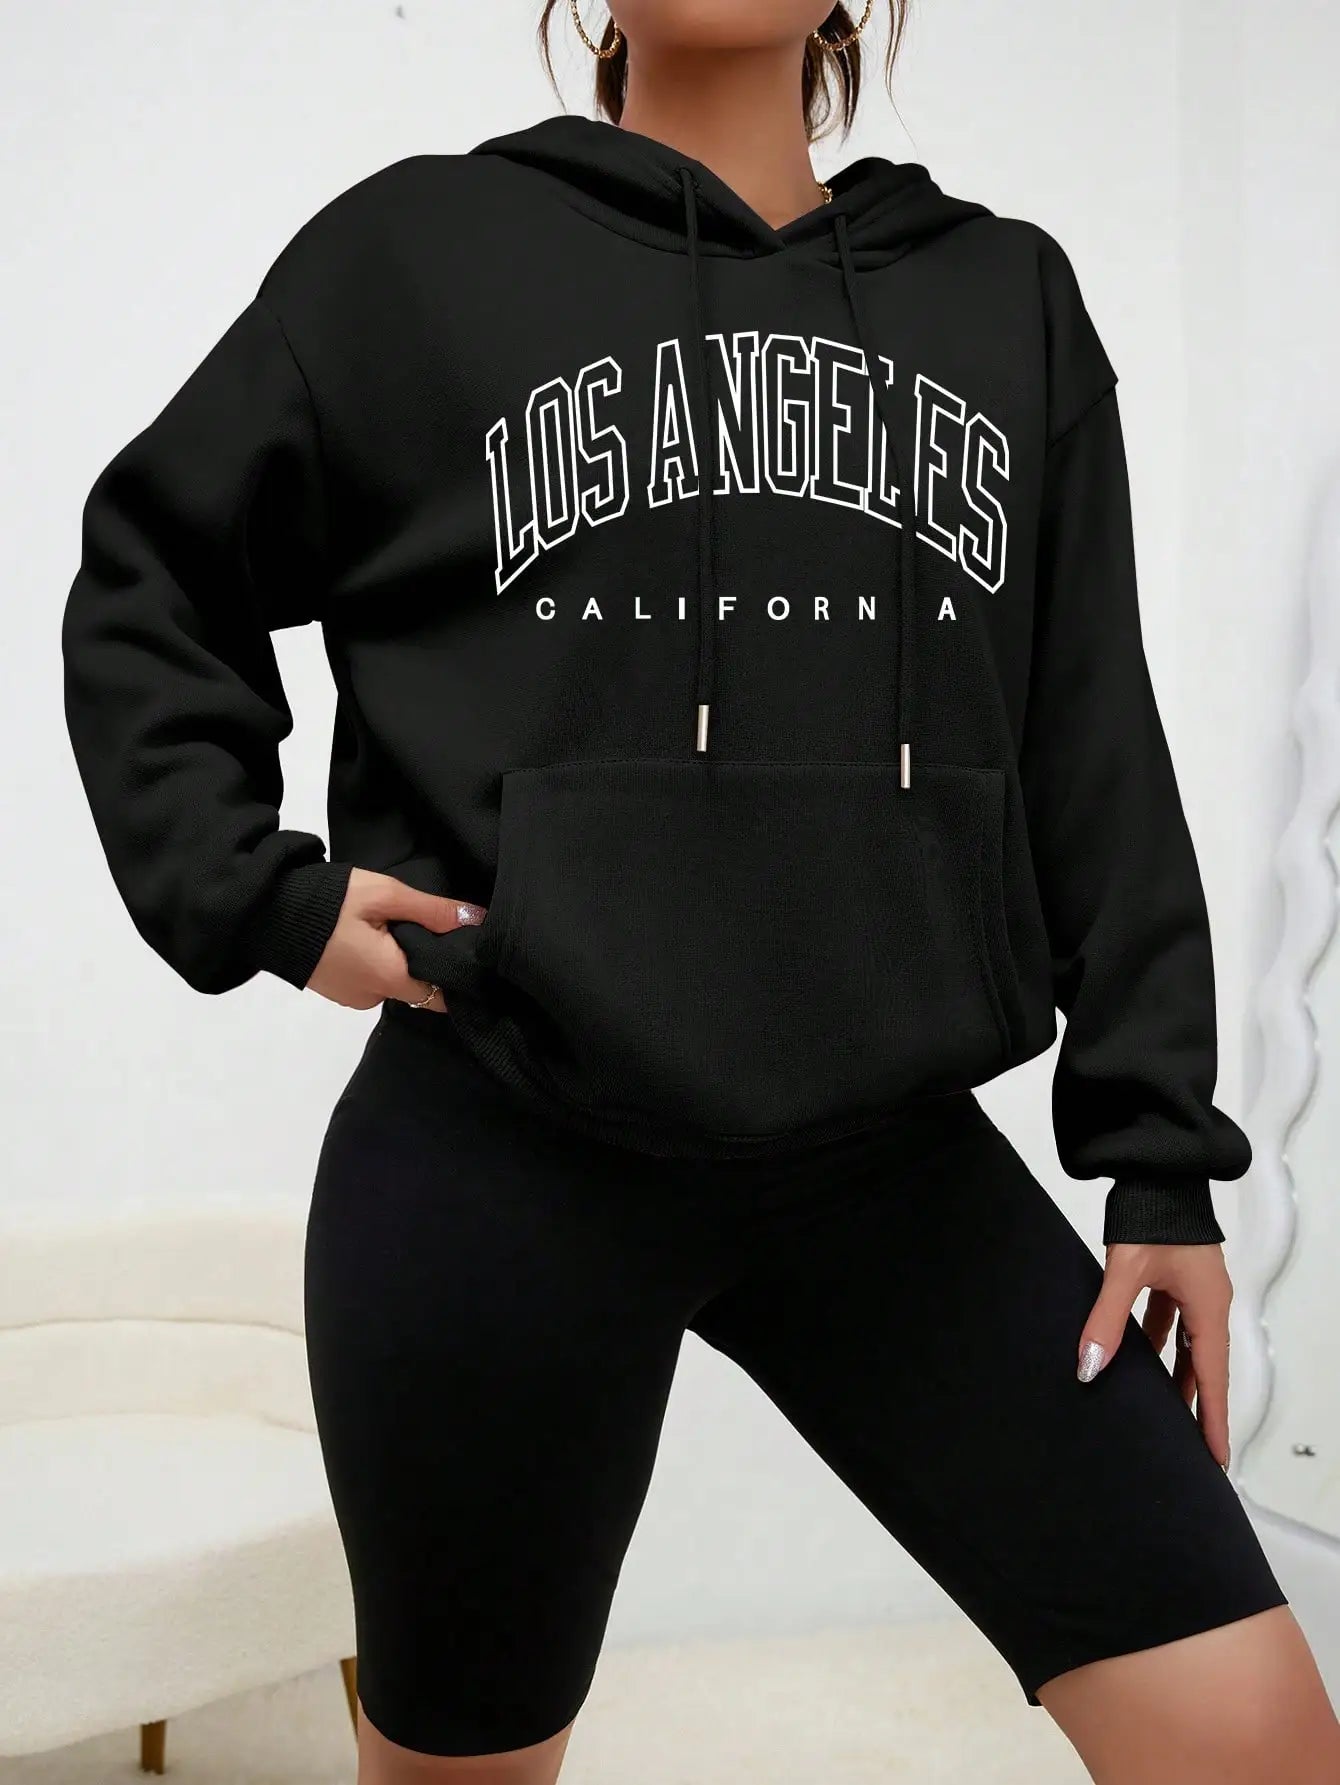 Los Angeles Art Letter Design Women Streetwear American Style Fashion Sweatshirt Autumn Hip Hop Female Hoodies Casual Fleece Top